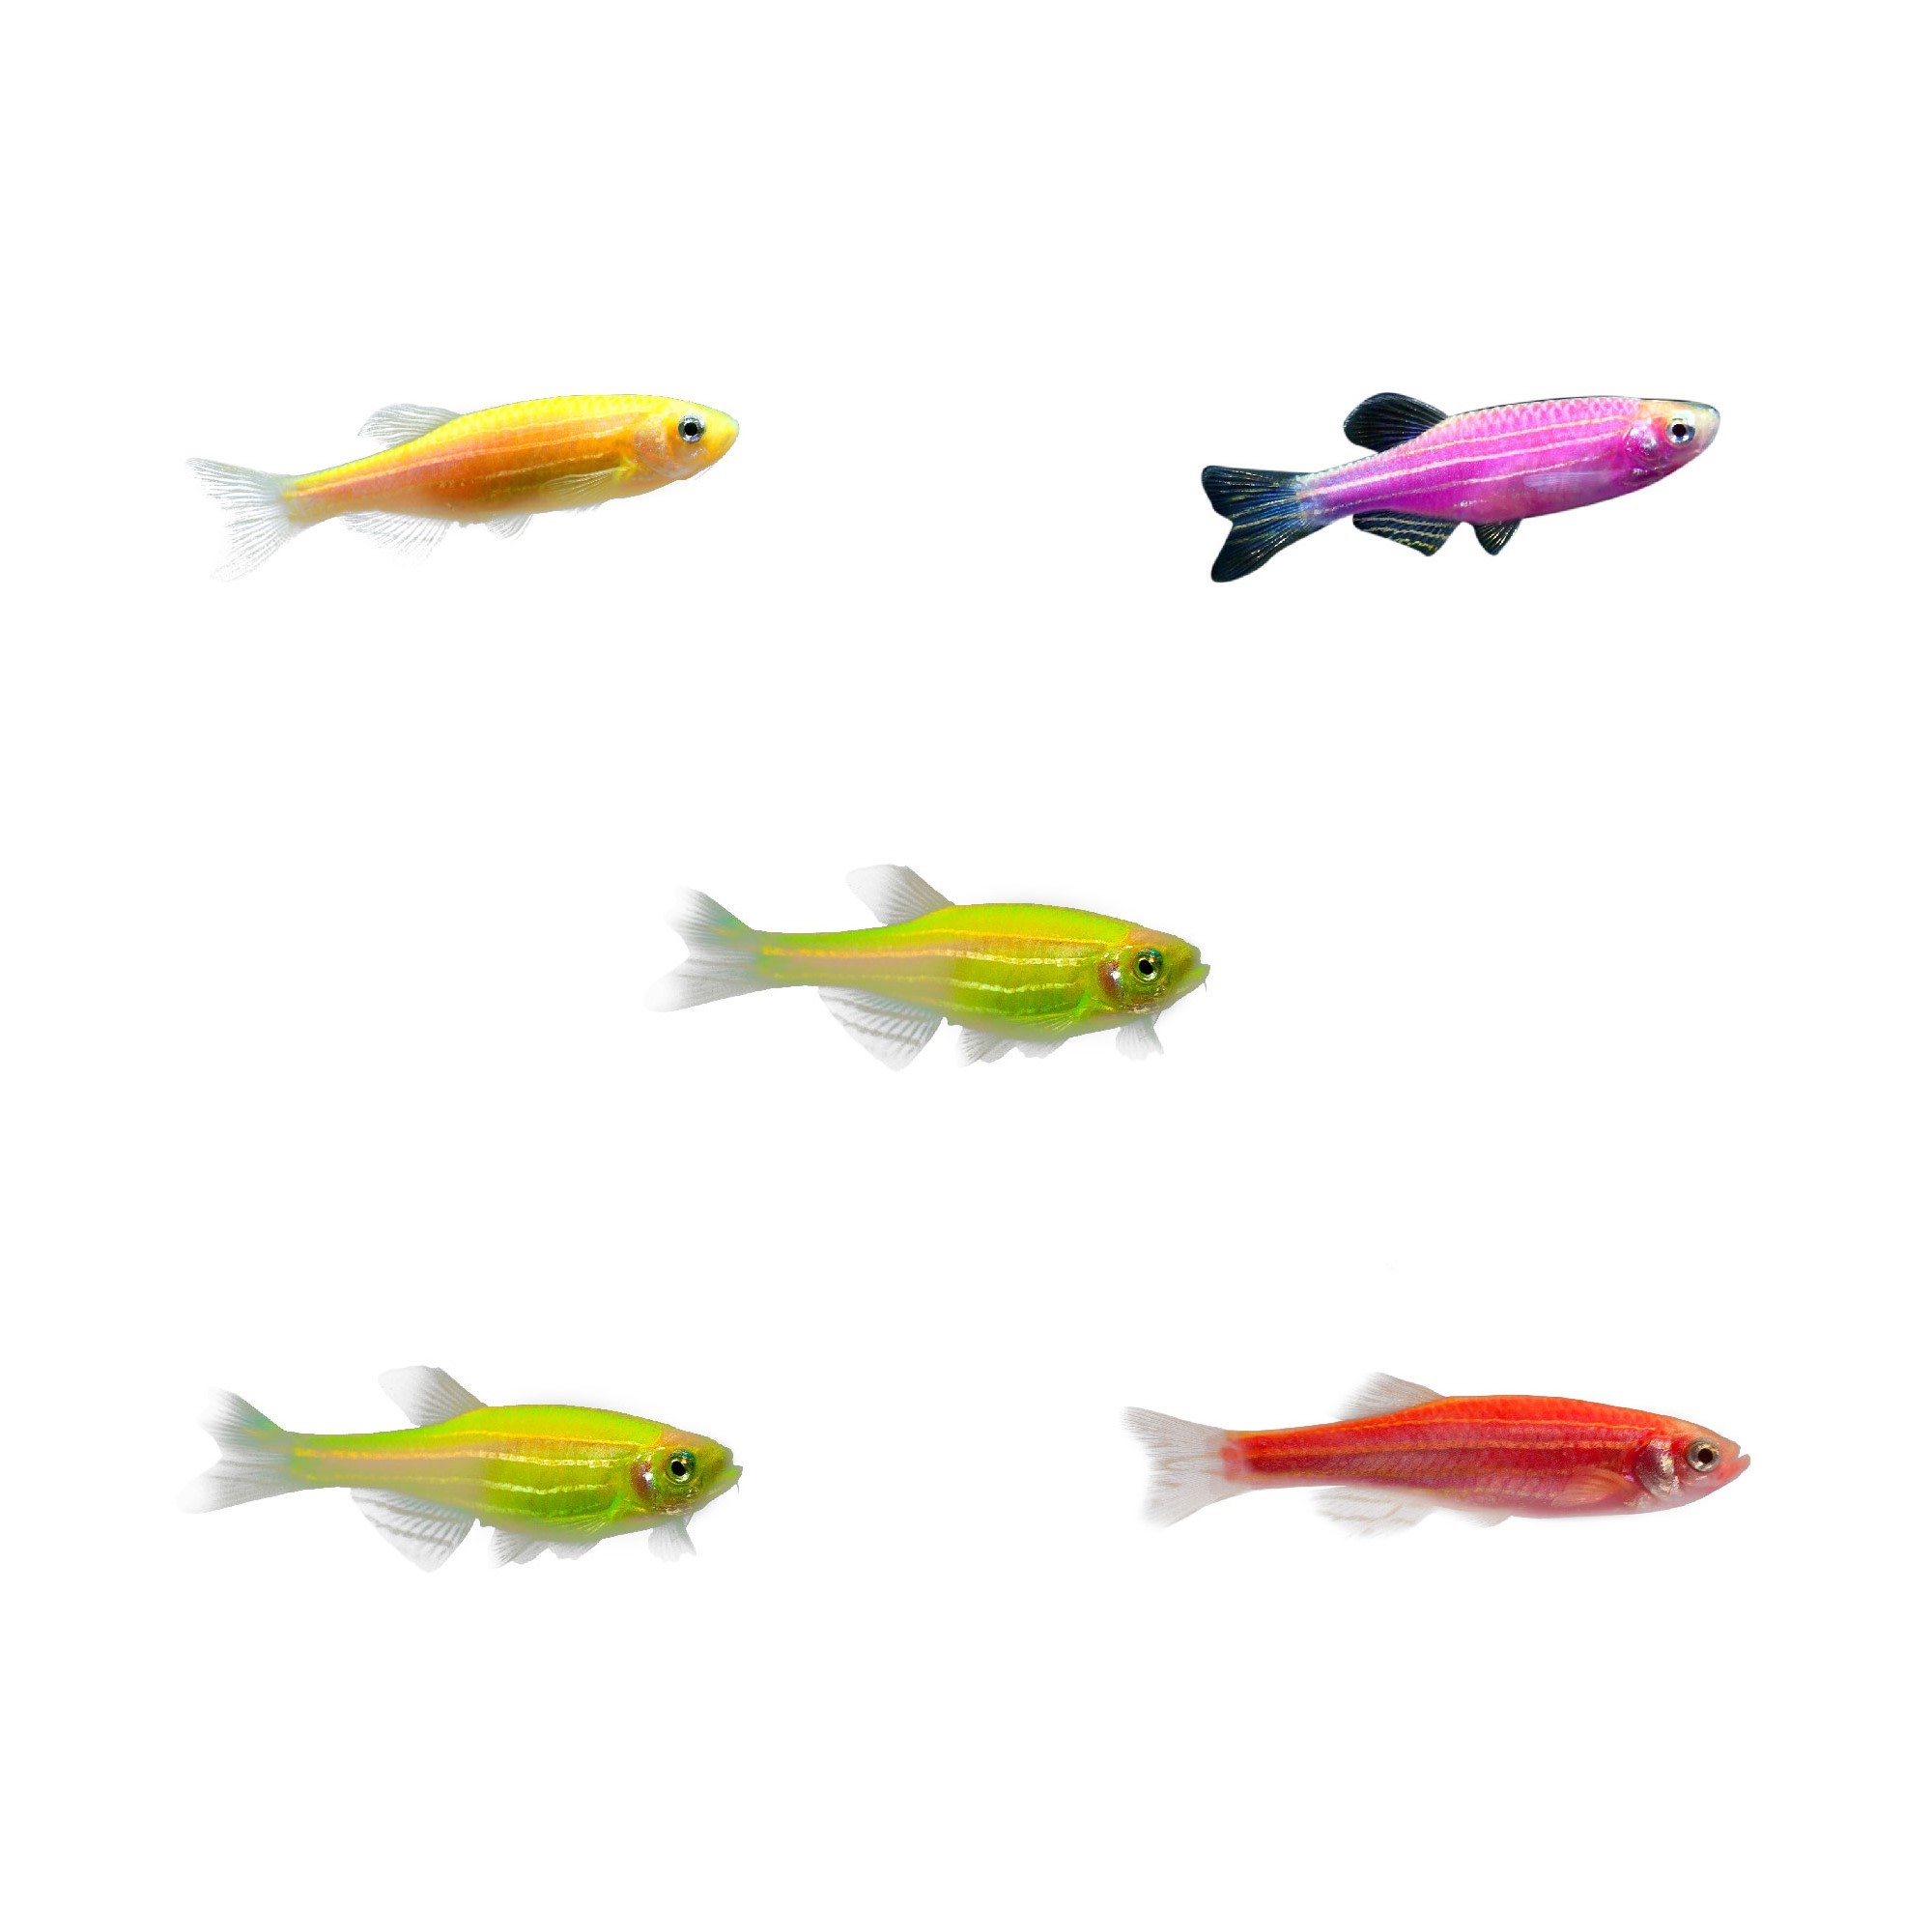 GloFish: Brighten Your Aquarium with Colorful Fish, Tanks